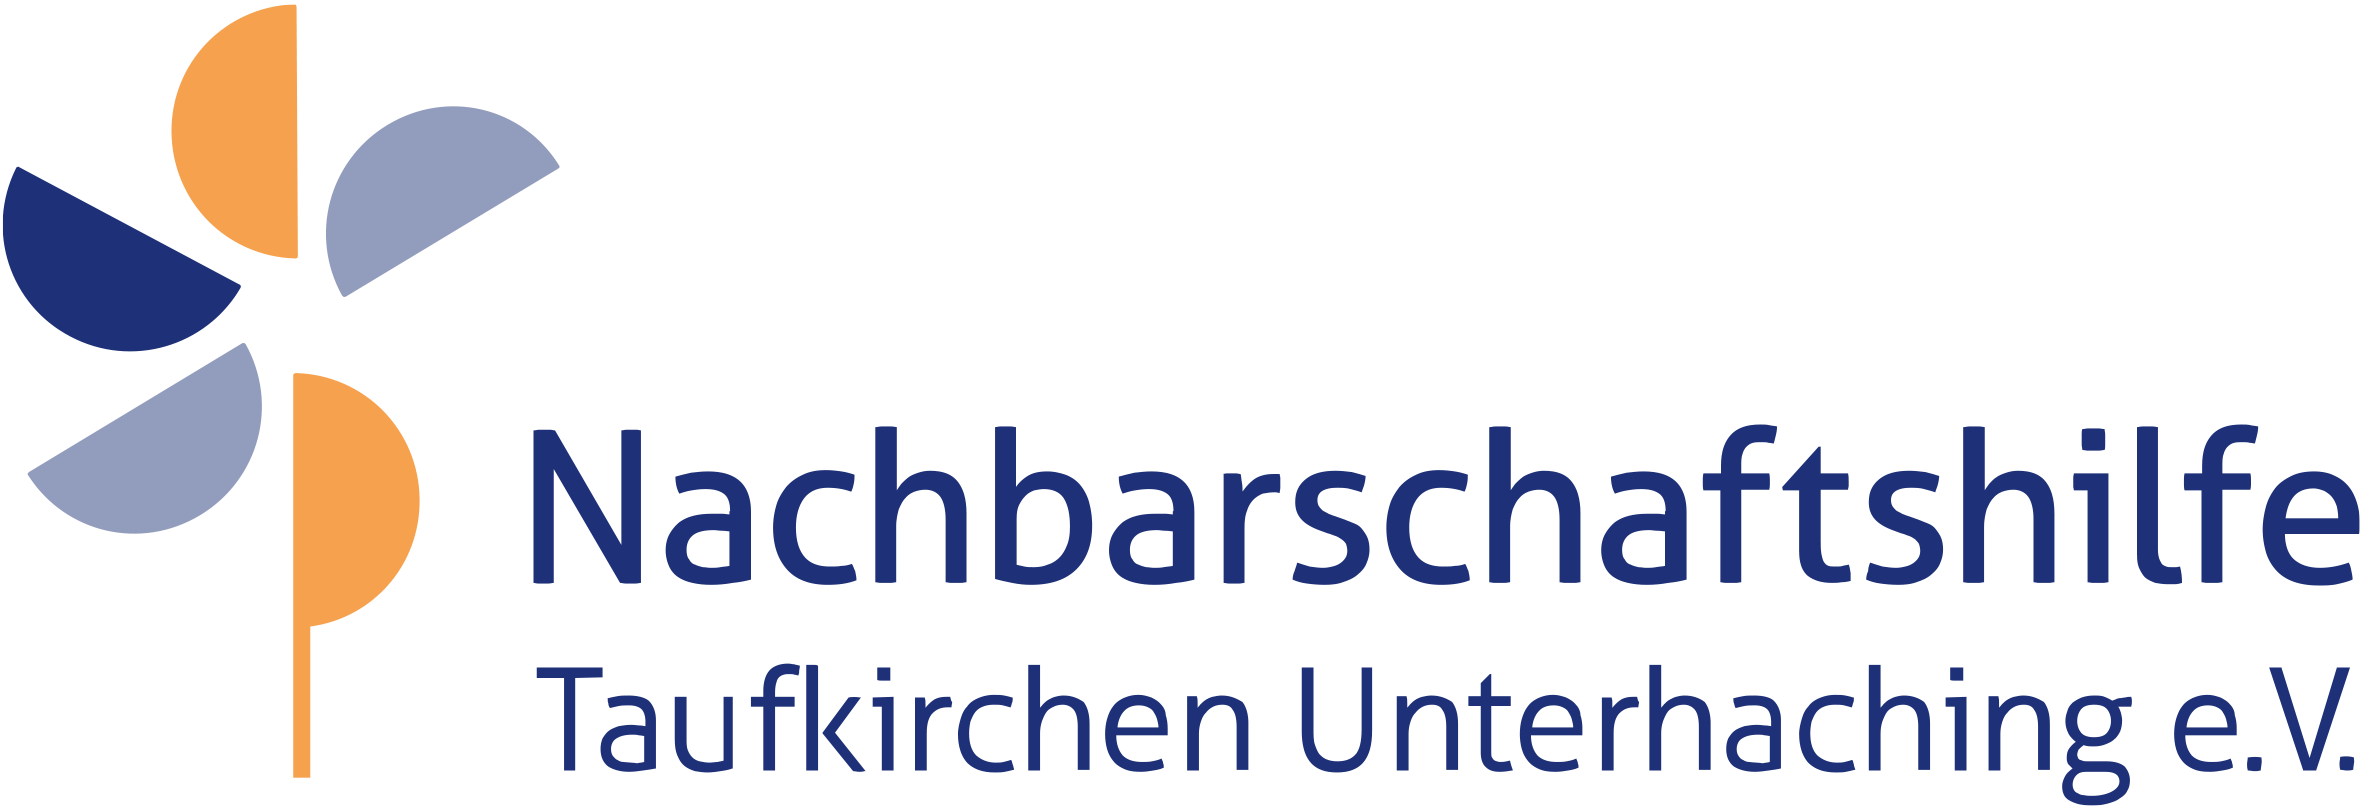 Nachbarschaftshilfe Taufkirchen Unterhaching - Übersicht Angebote